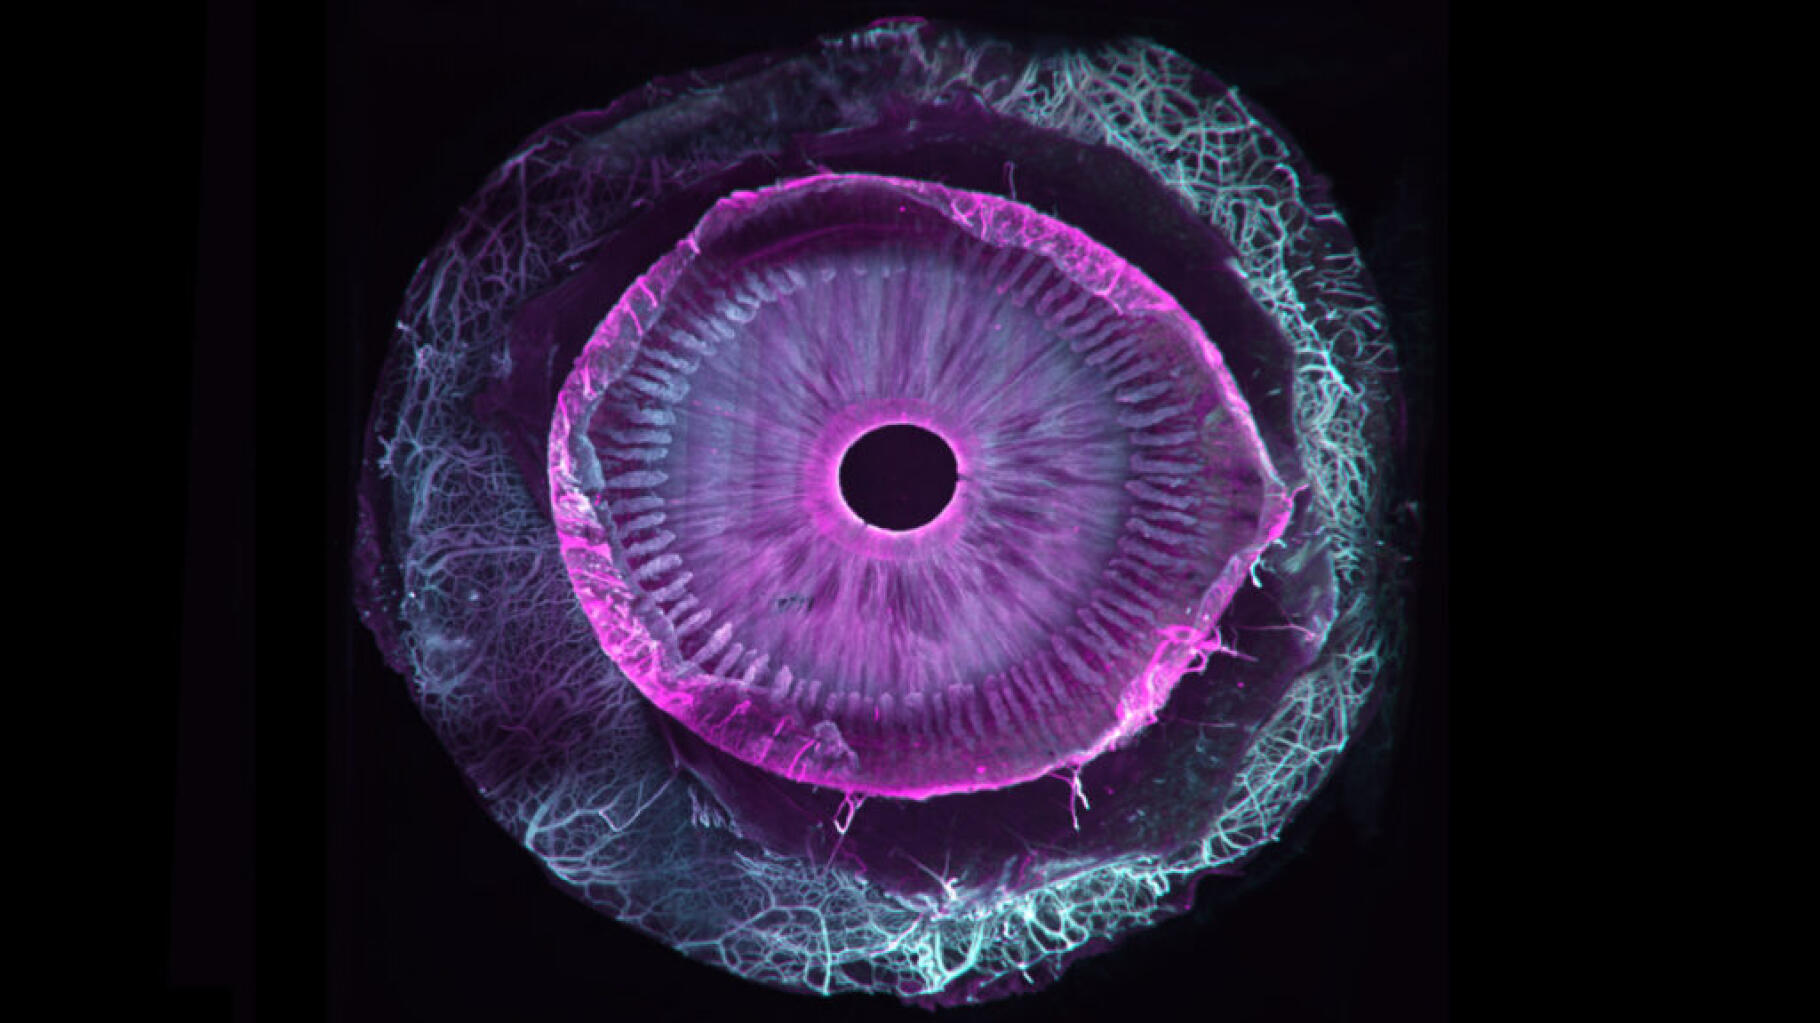 Dit menselijk oog is volledig transparant geworden, wat een kleine wetenschappelijke revolutie is